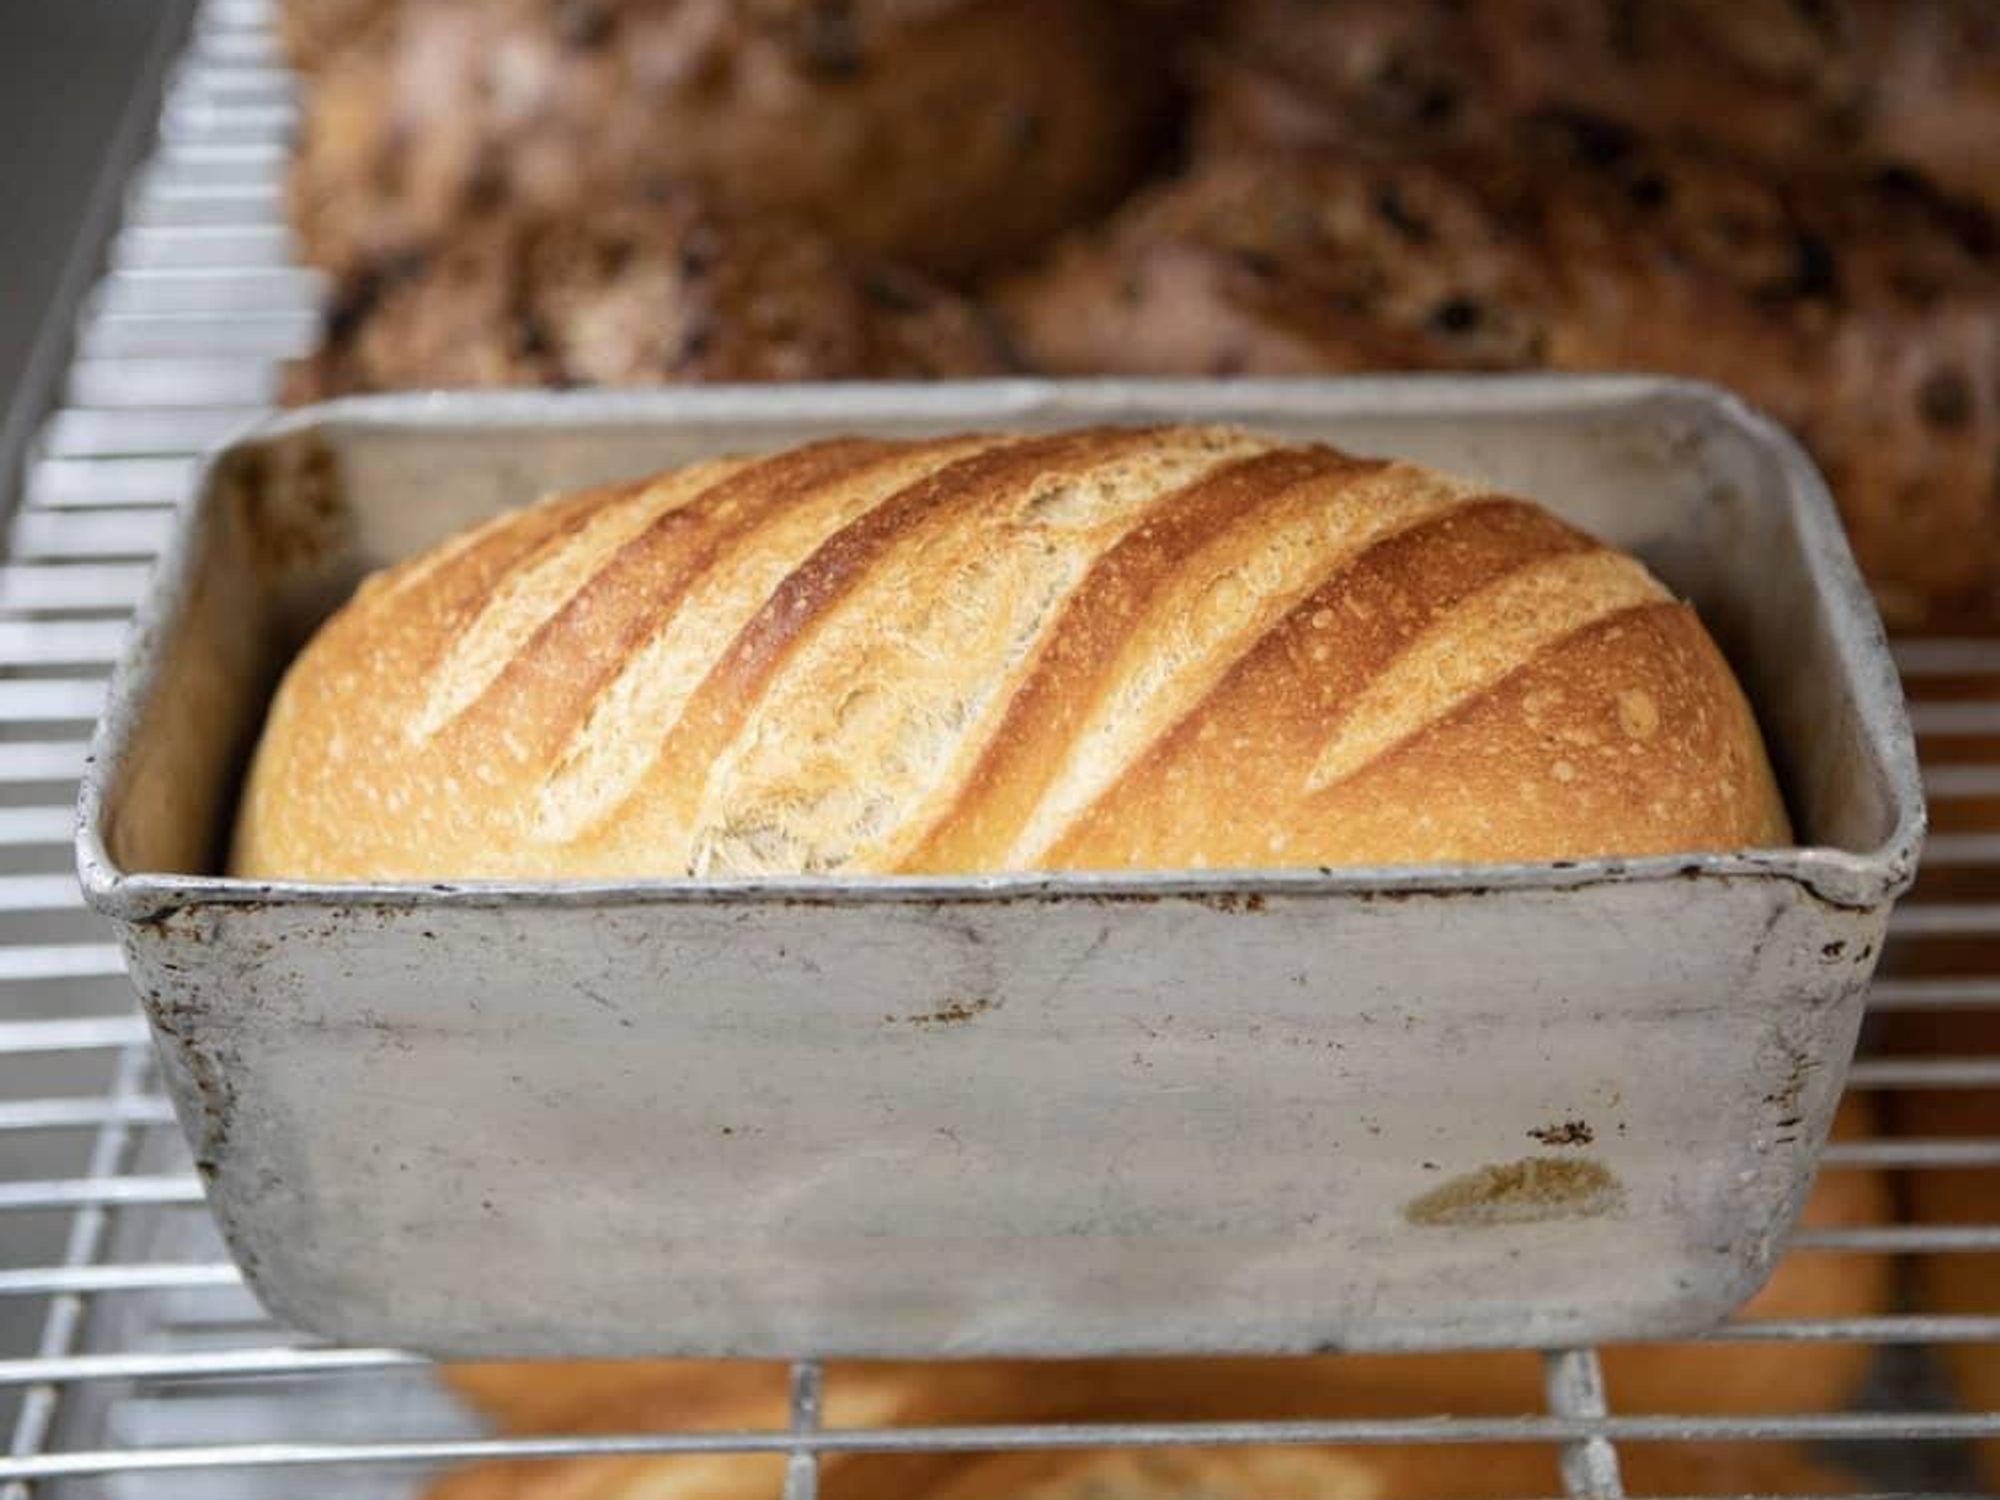 Empire Baking Company bread